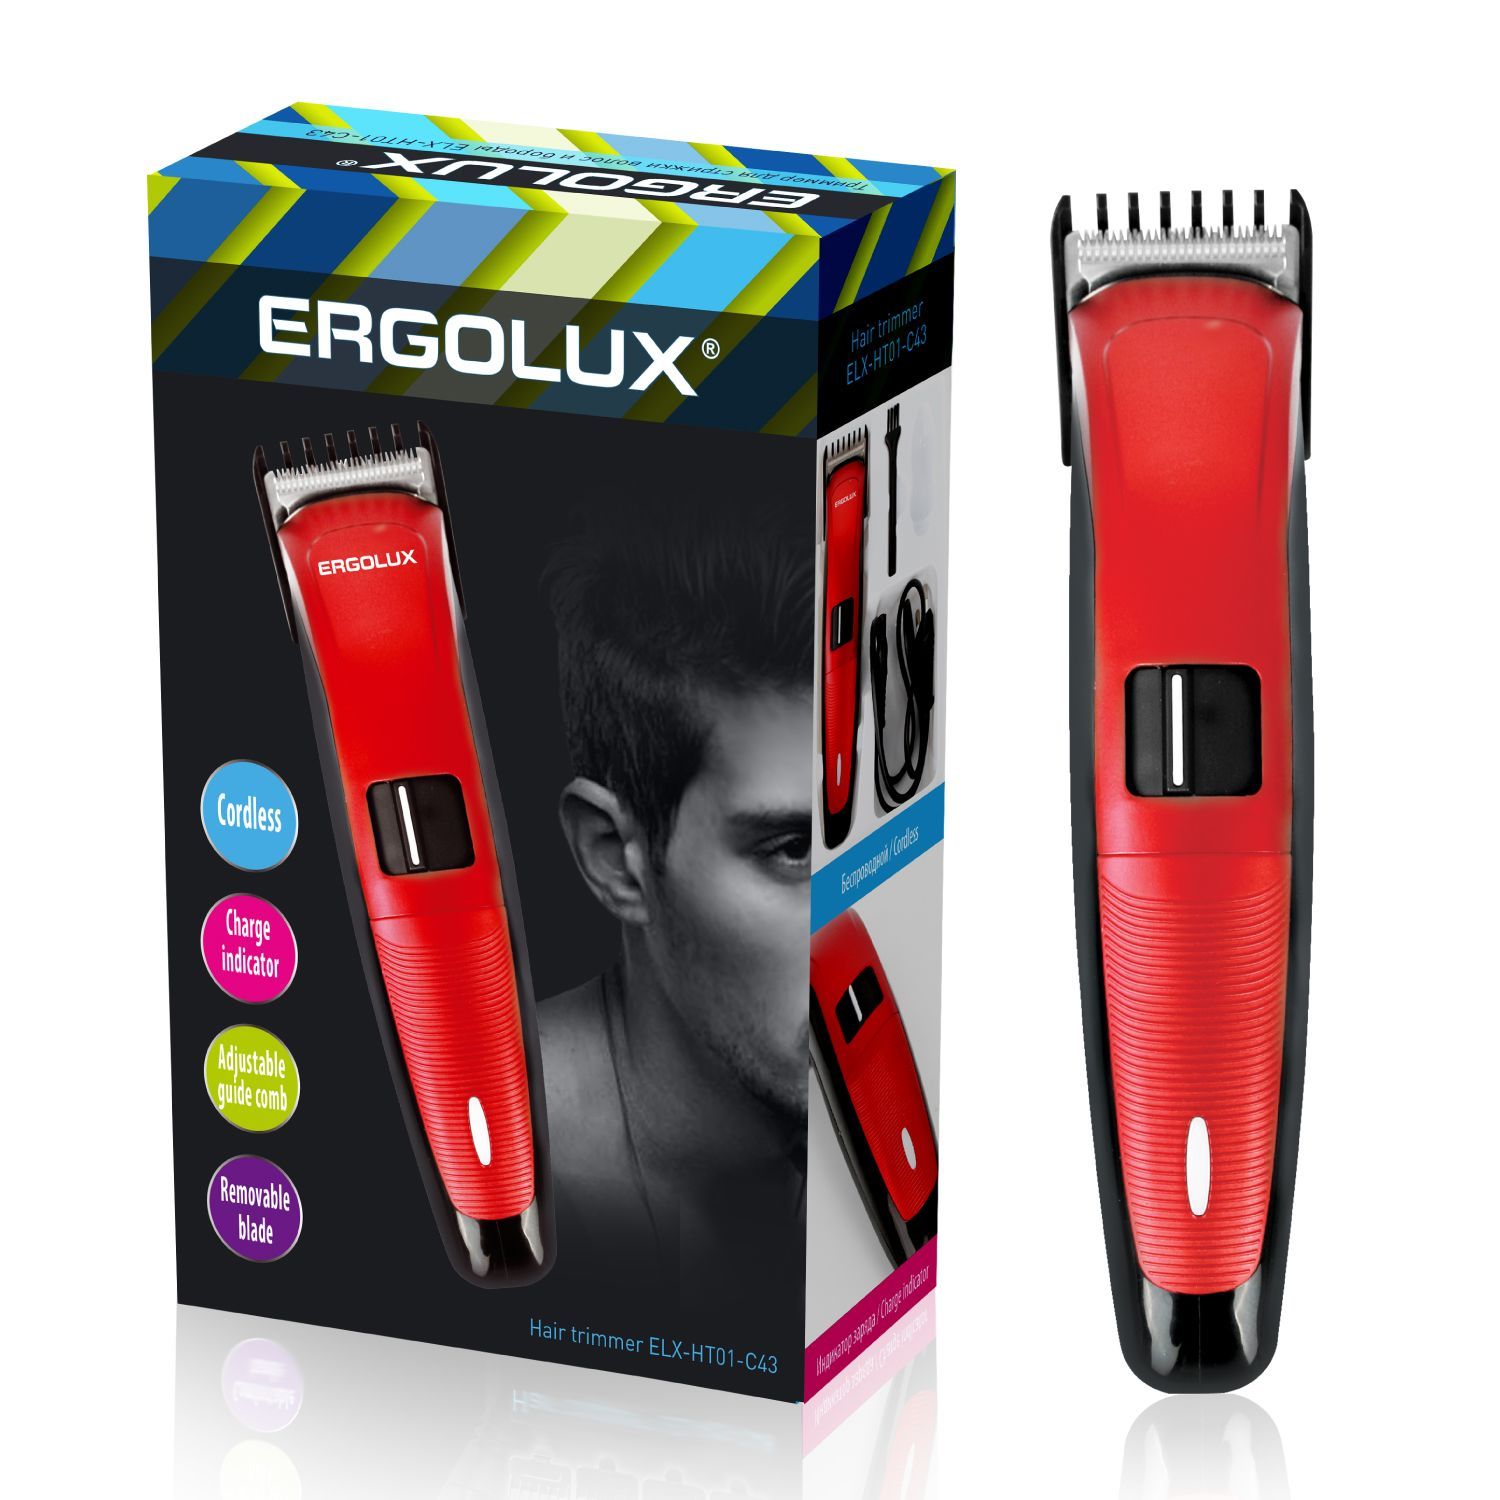  ERGOLUX ELX-HT01-C43 